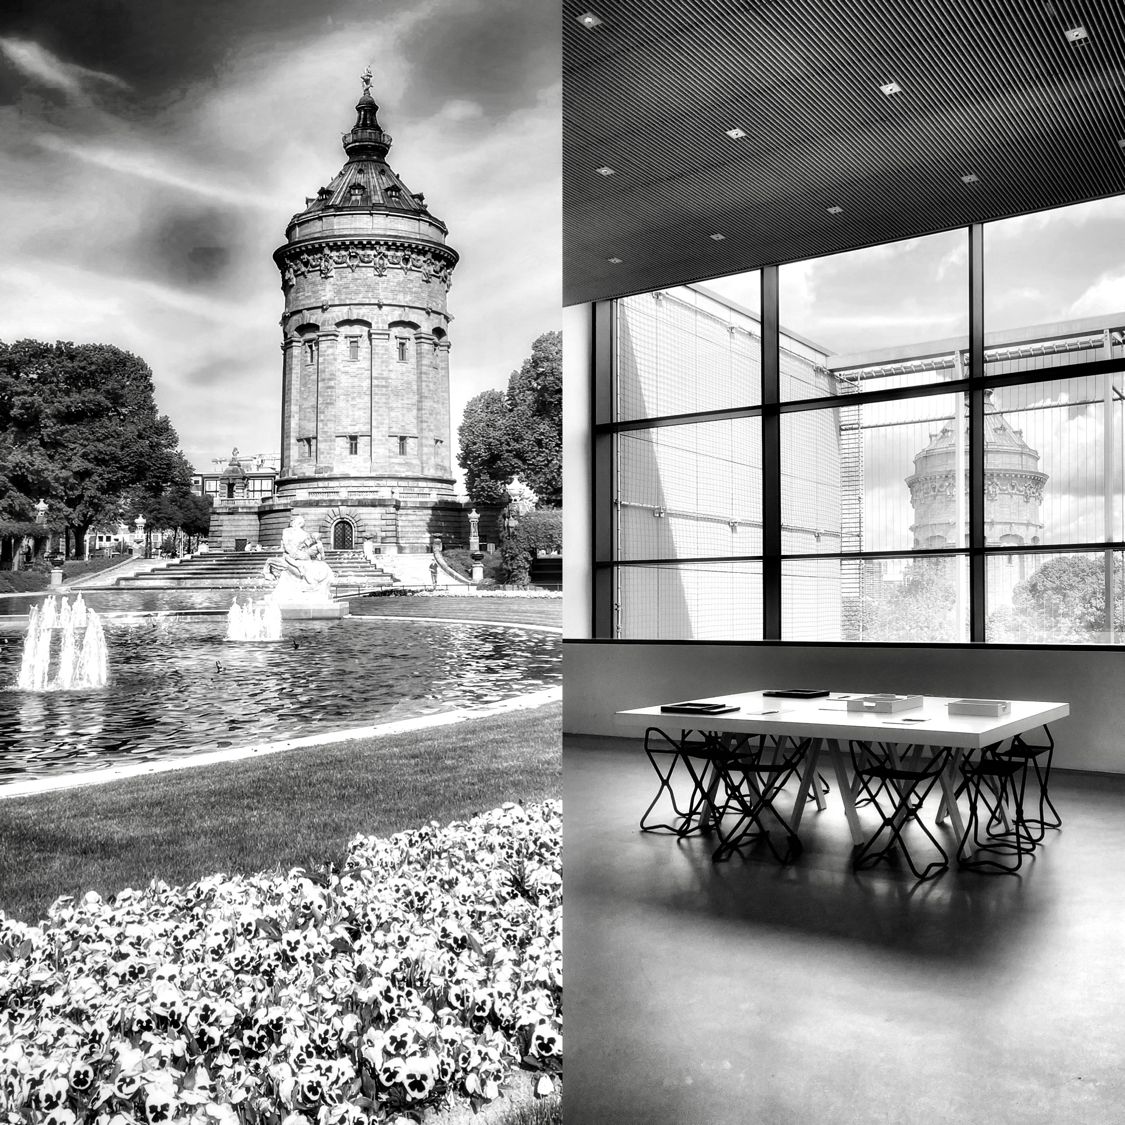 schwarz weiß Bild Collage, Turm in Mannheim mit Blumenbeet und Tisch Innenaufnahme eines Tisches